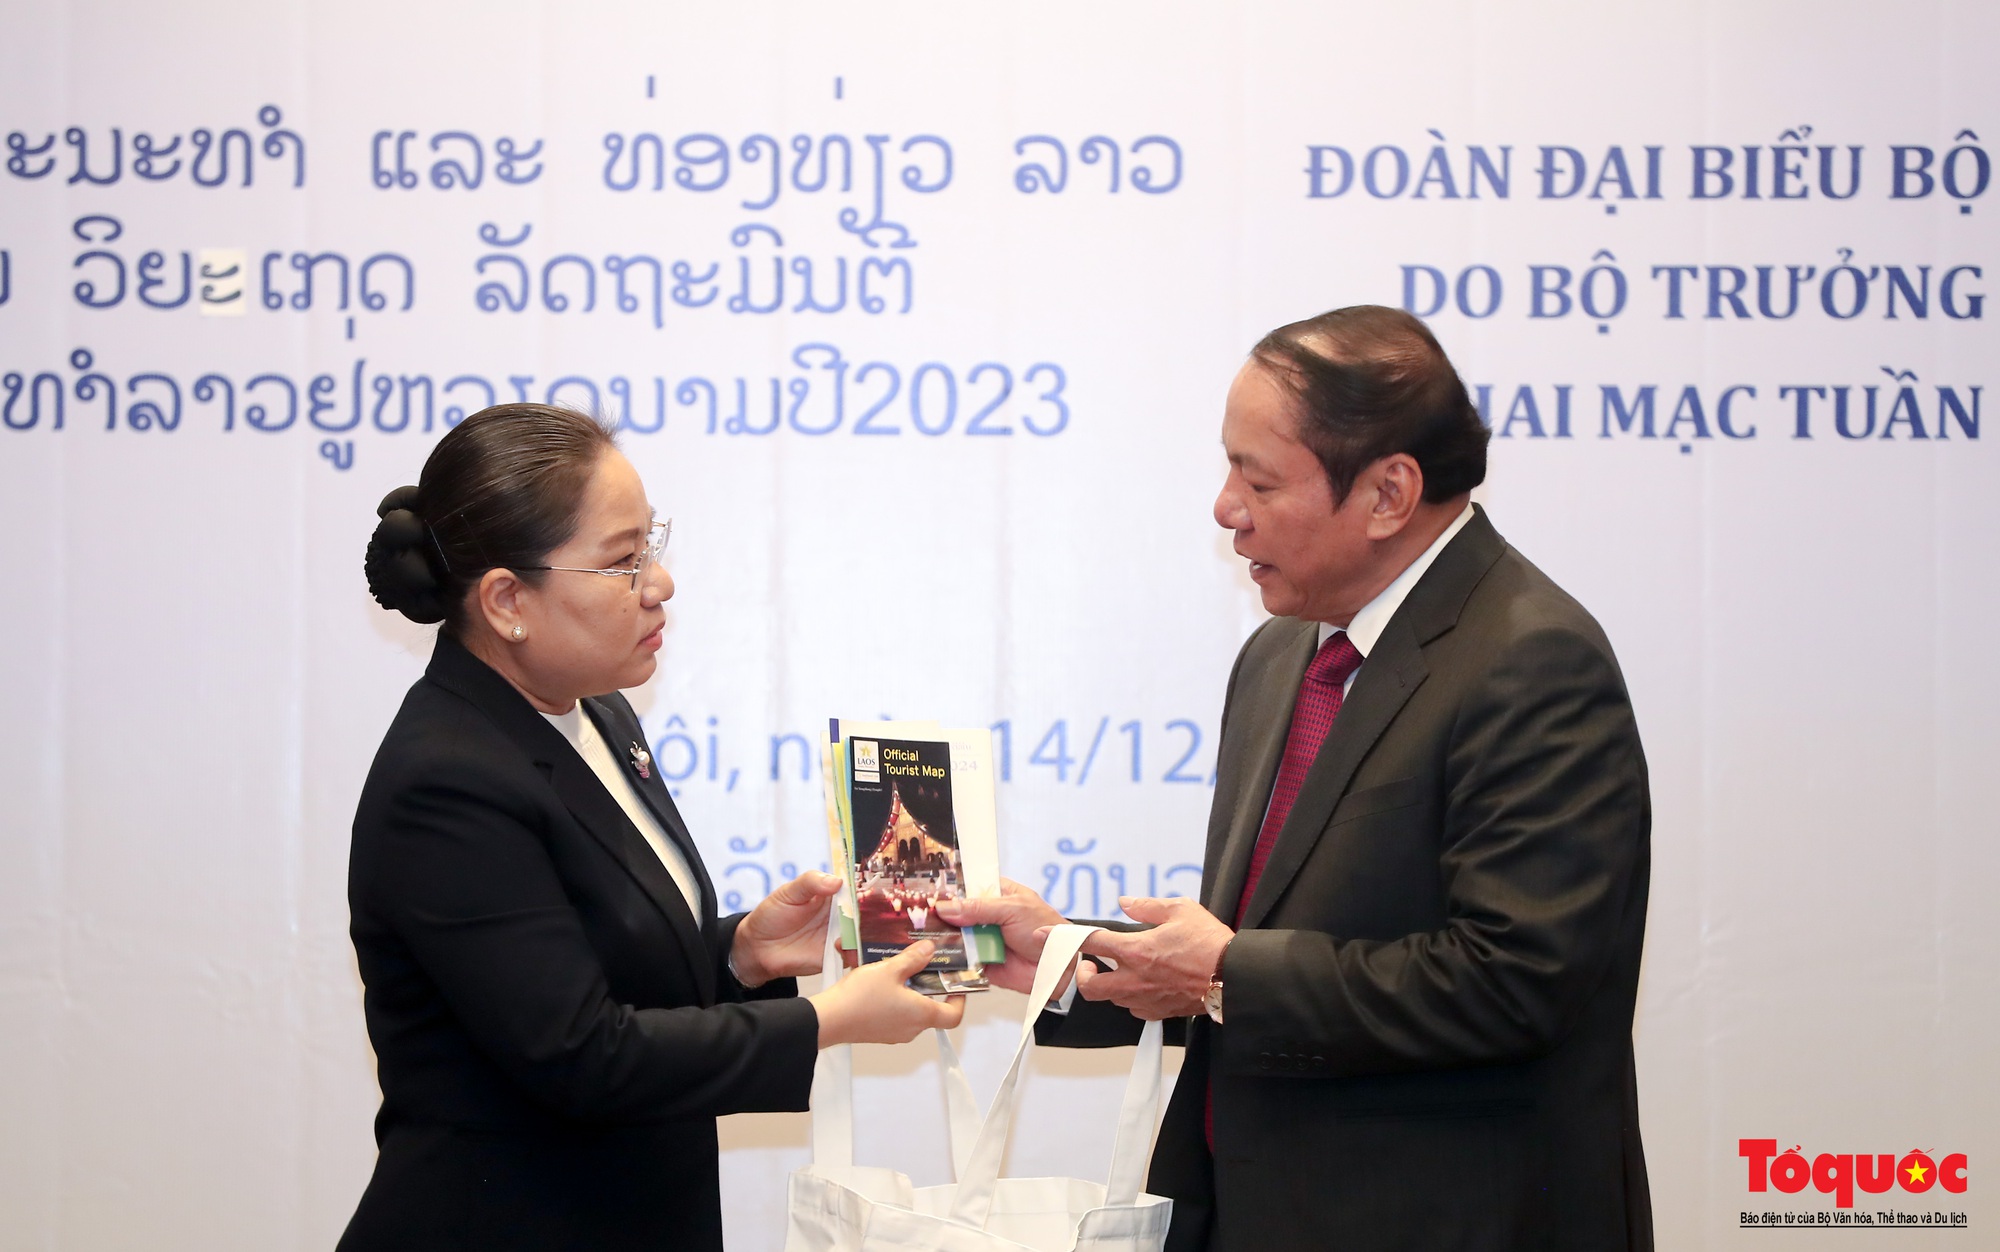 Chùm ảnh: Bộ trưởng Bộ VHTTDL Việt Nam hội đàm với Bộ Thông tin, Văn hóa và Du lịch Lào  - Ảnh 10.